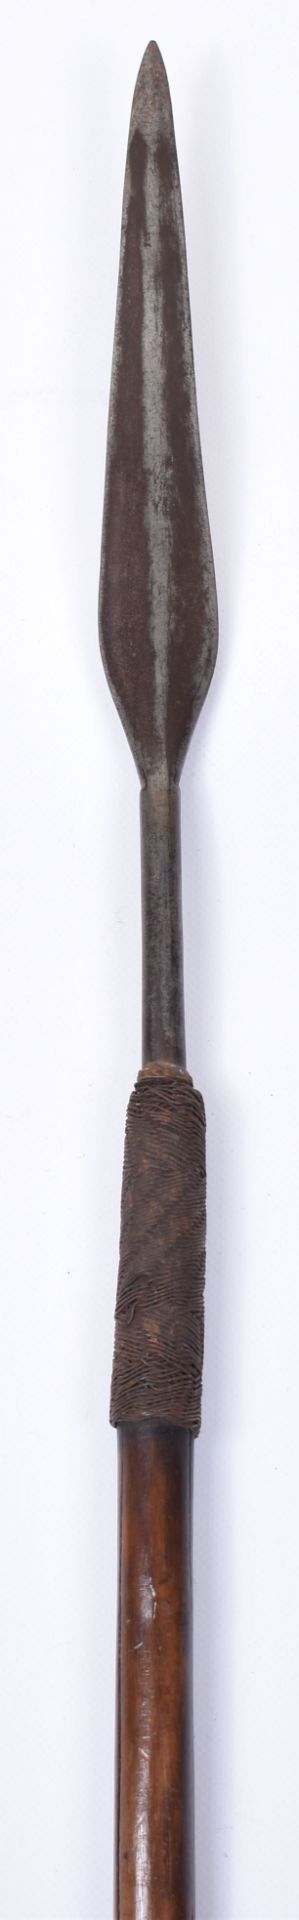 Interesting Early Zulu Spear “Assegai” - Image 6 of 10